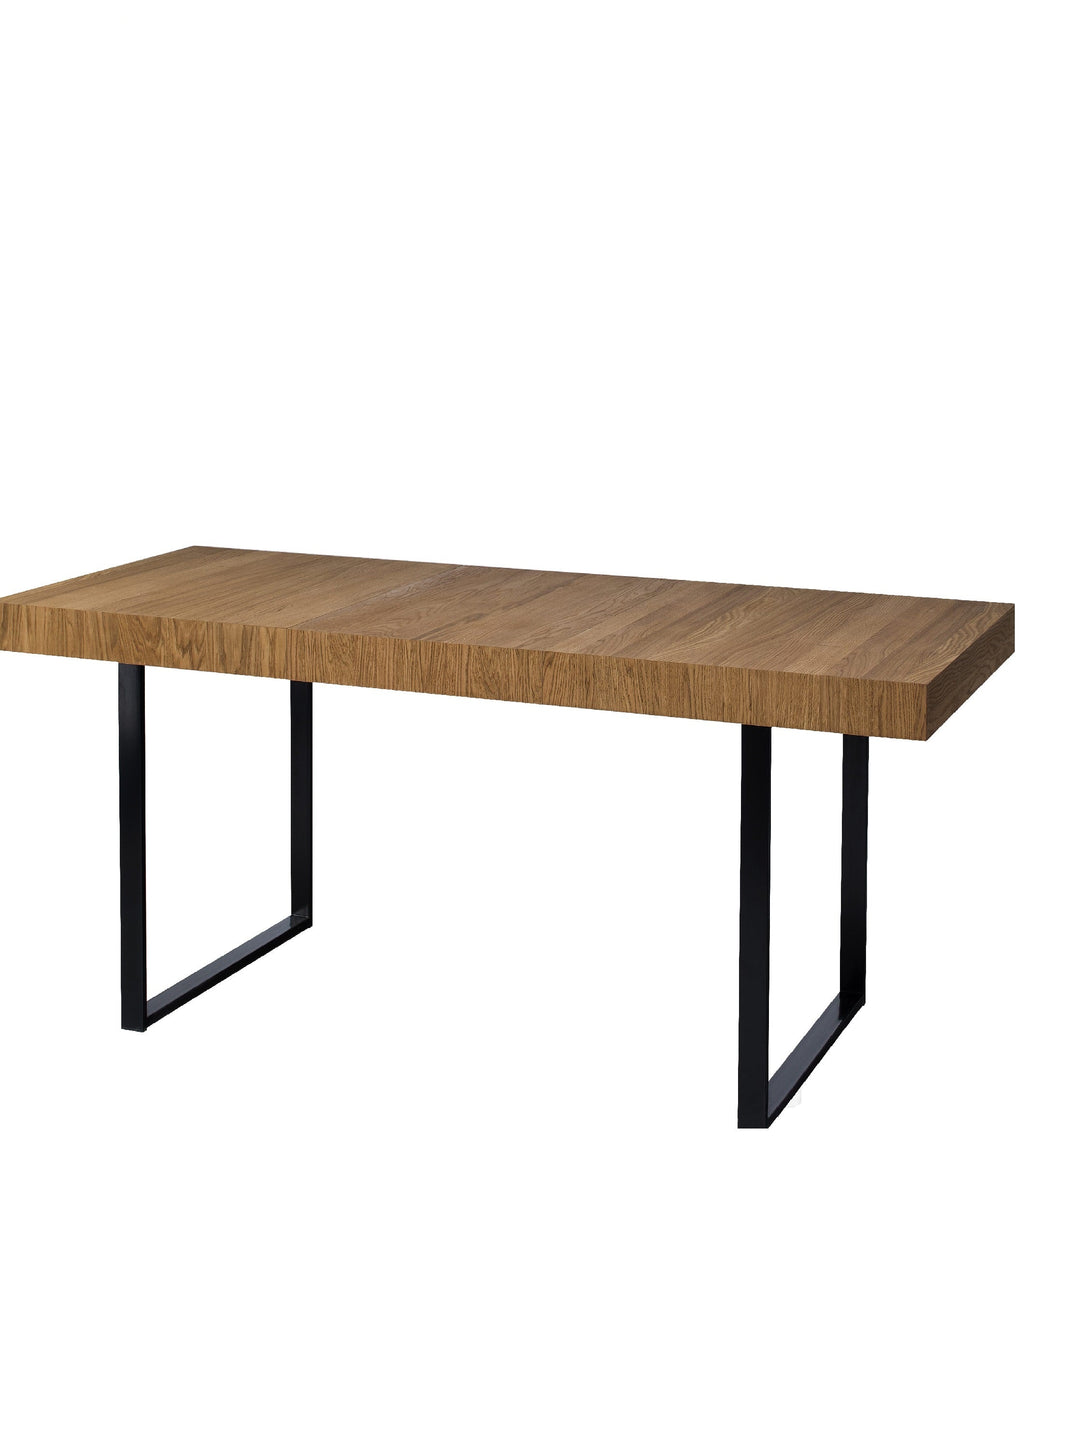 VESKOR Muebles de madera roble Mozaik, mesas de comedor extensible nórdico moderno escandinavo 